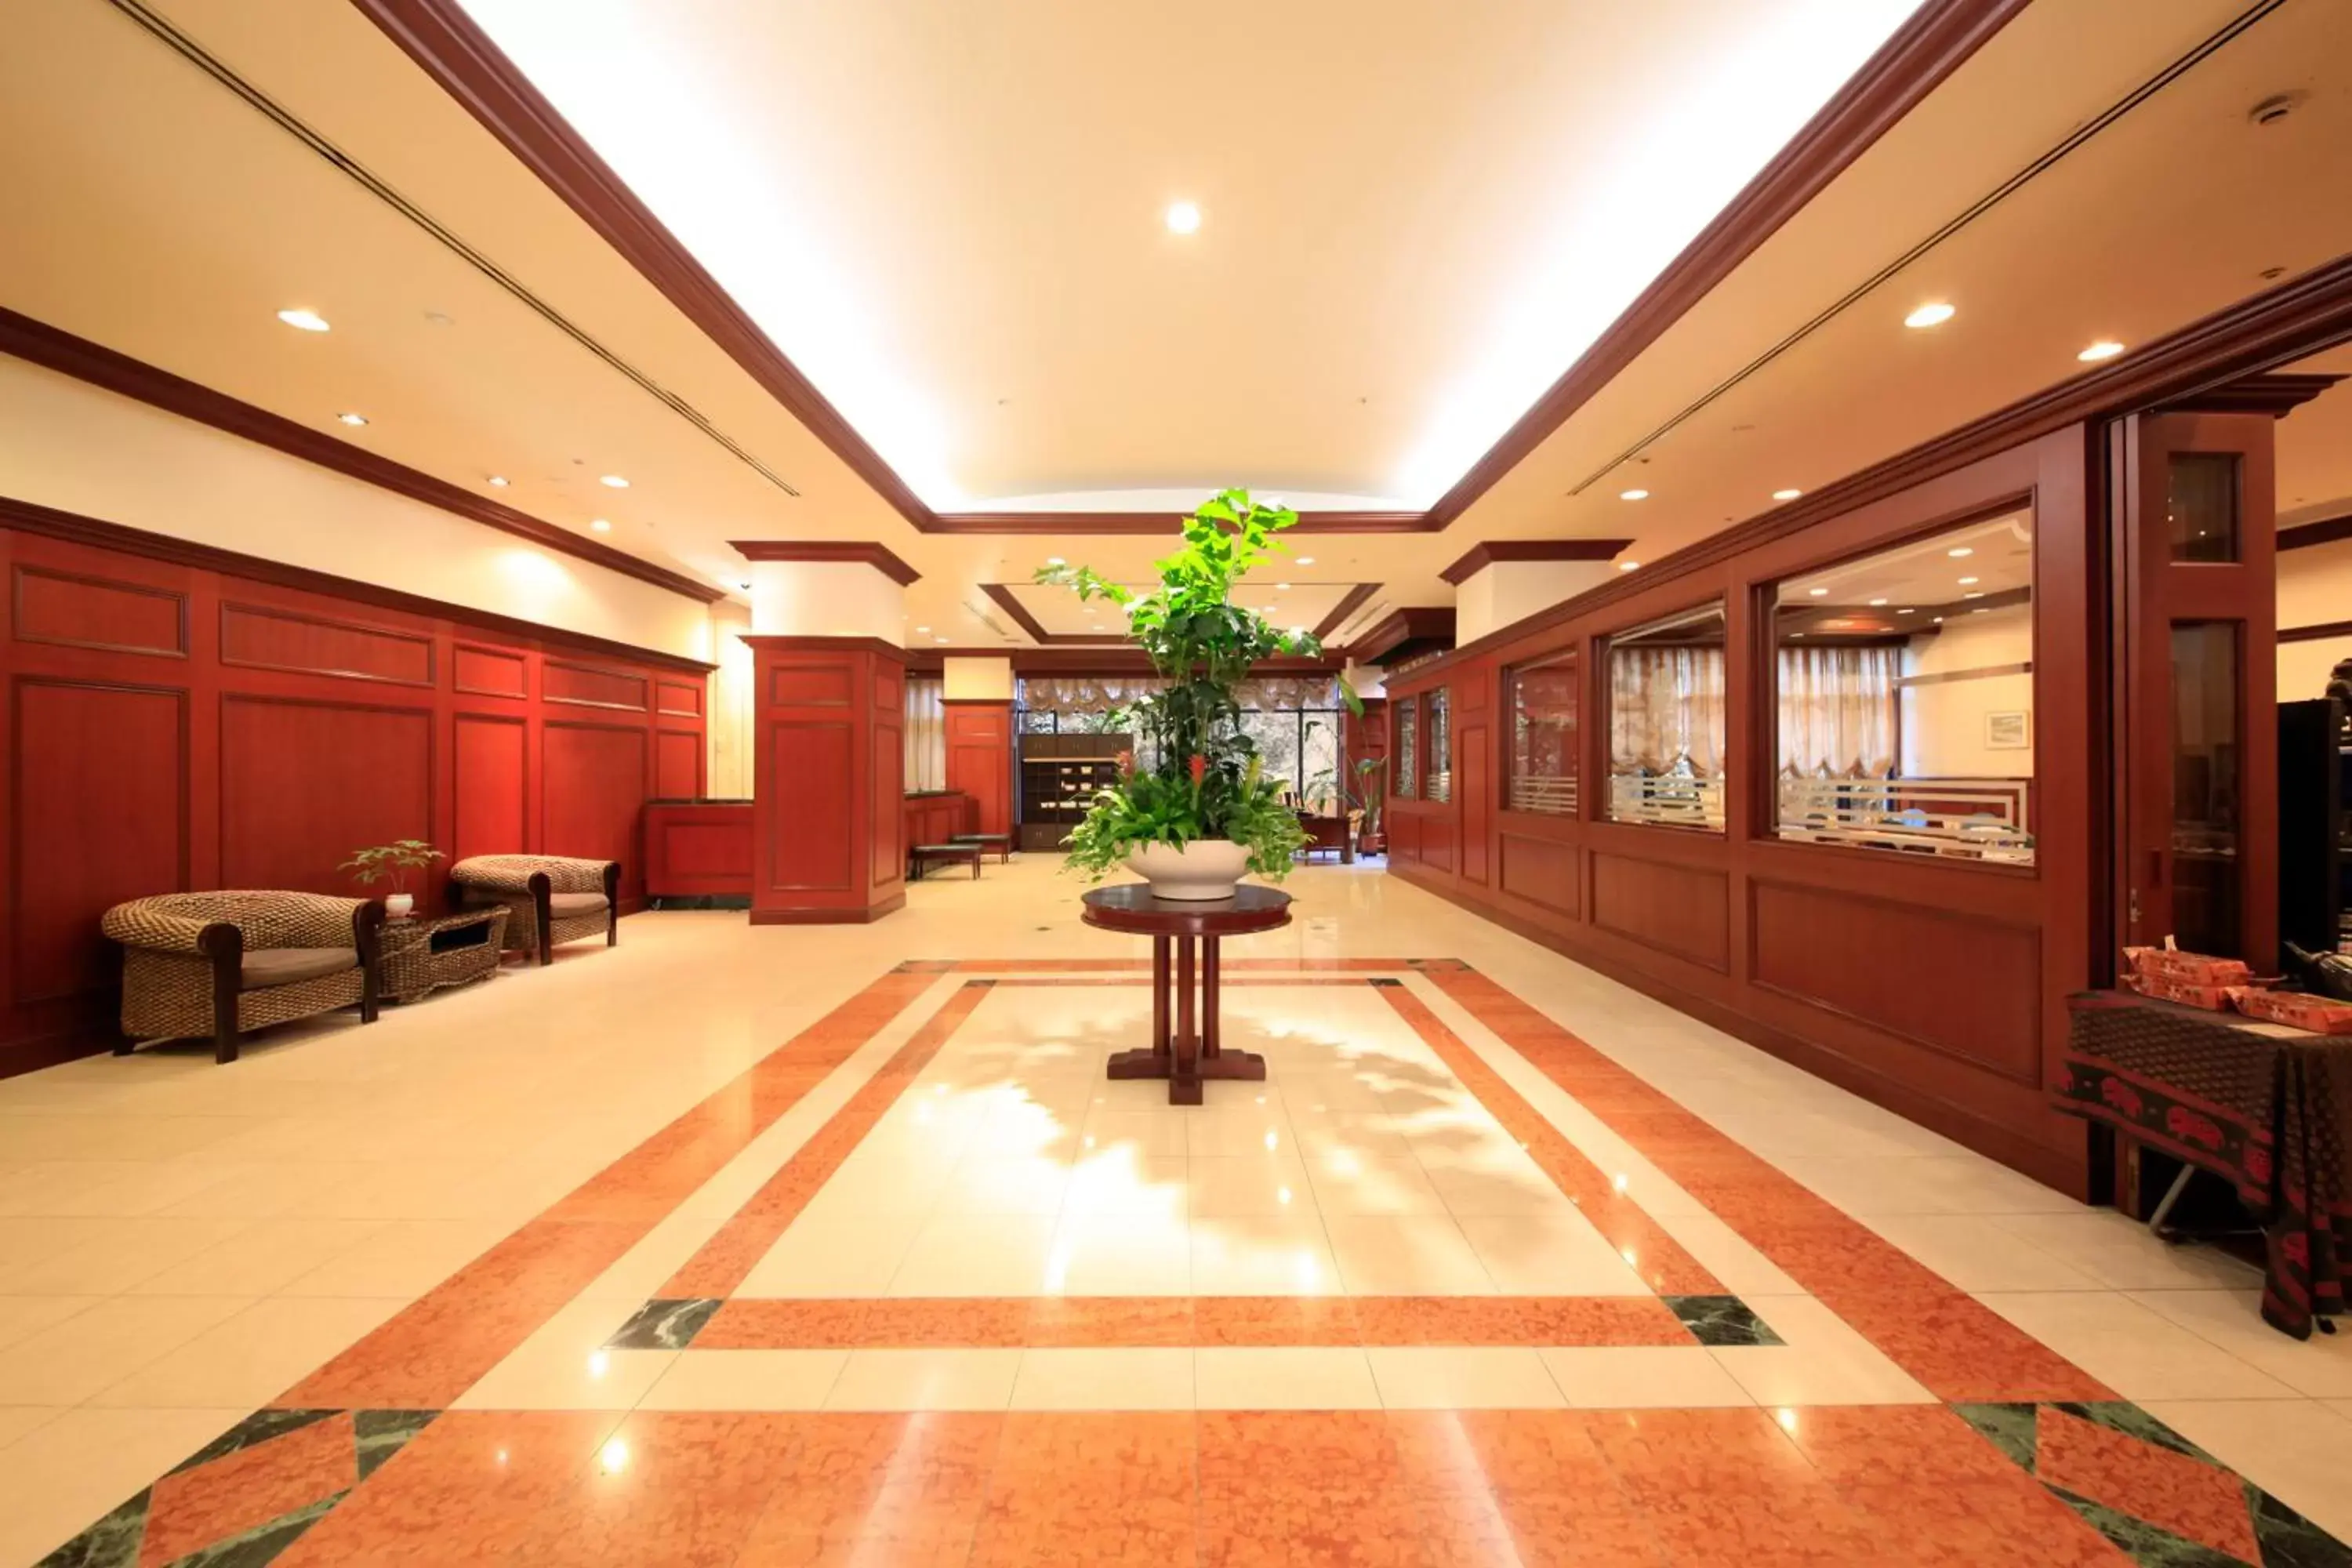 Lobby or reception, Lobby/Reception in Quintessa Hotel Sasebo